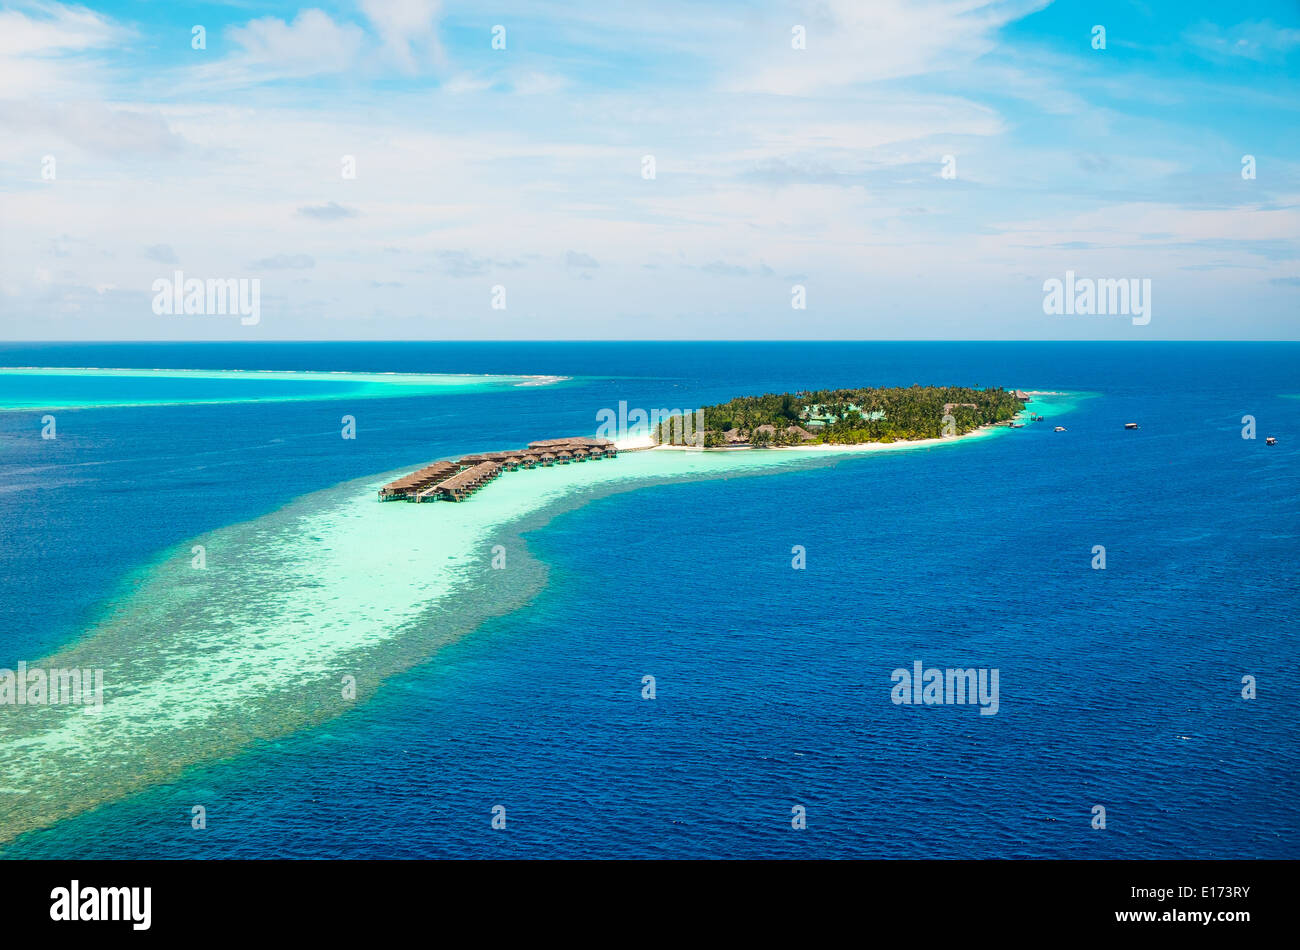 Hôtel de l'île Bird's-eye view. Océan Indien Maldives Banque D'Images